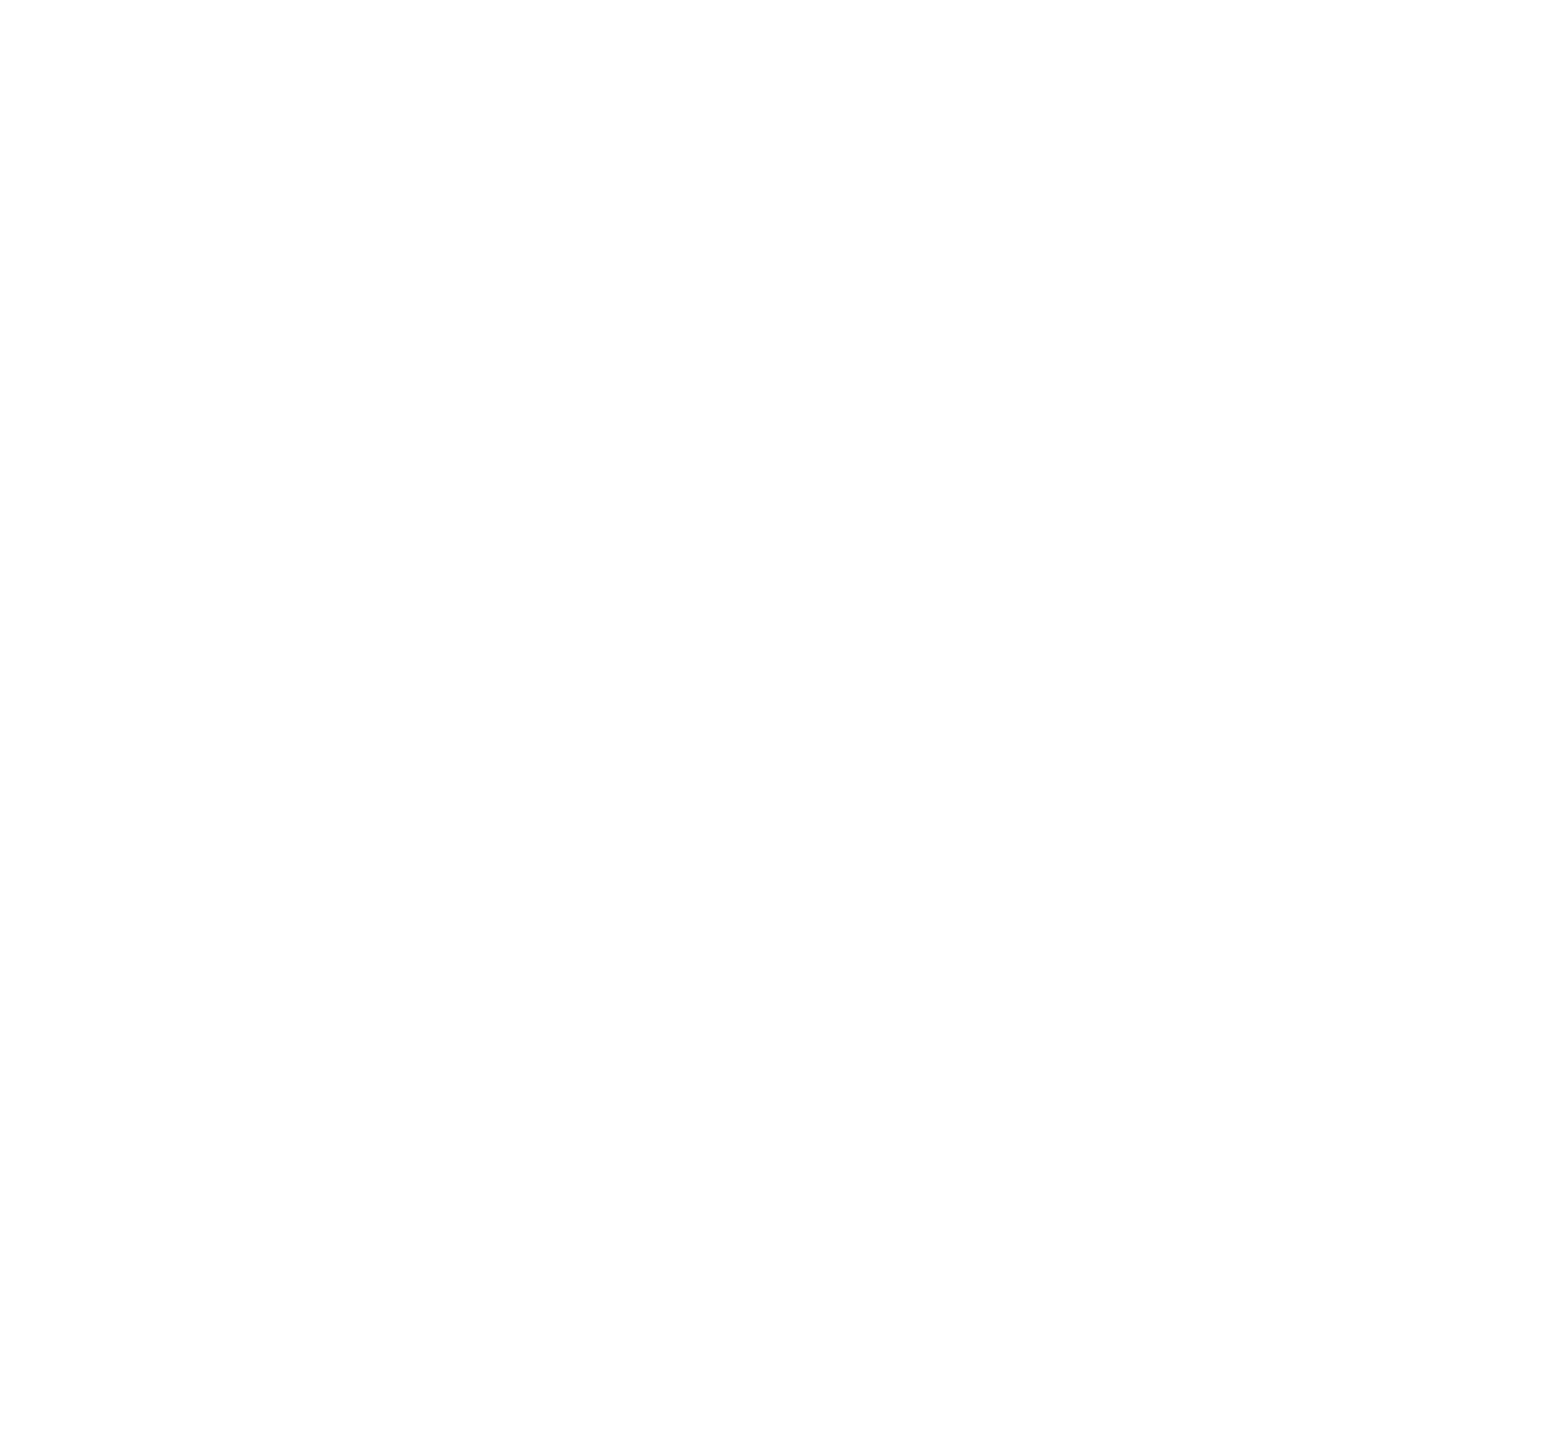 Victrex logo large for dark backgrounds (transparent PNG)